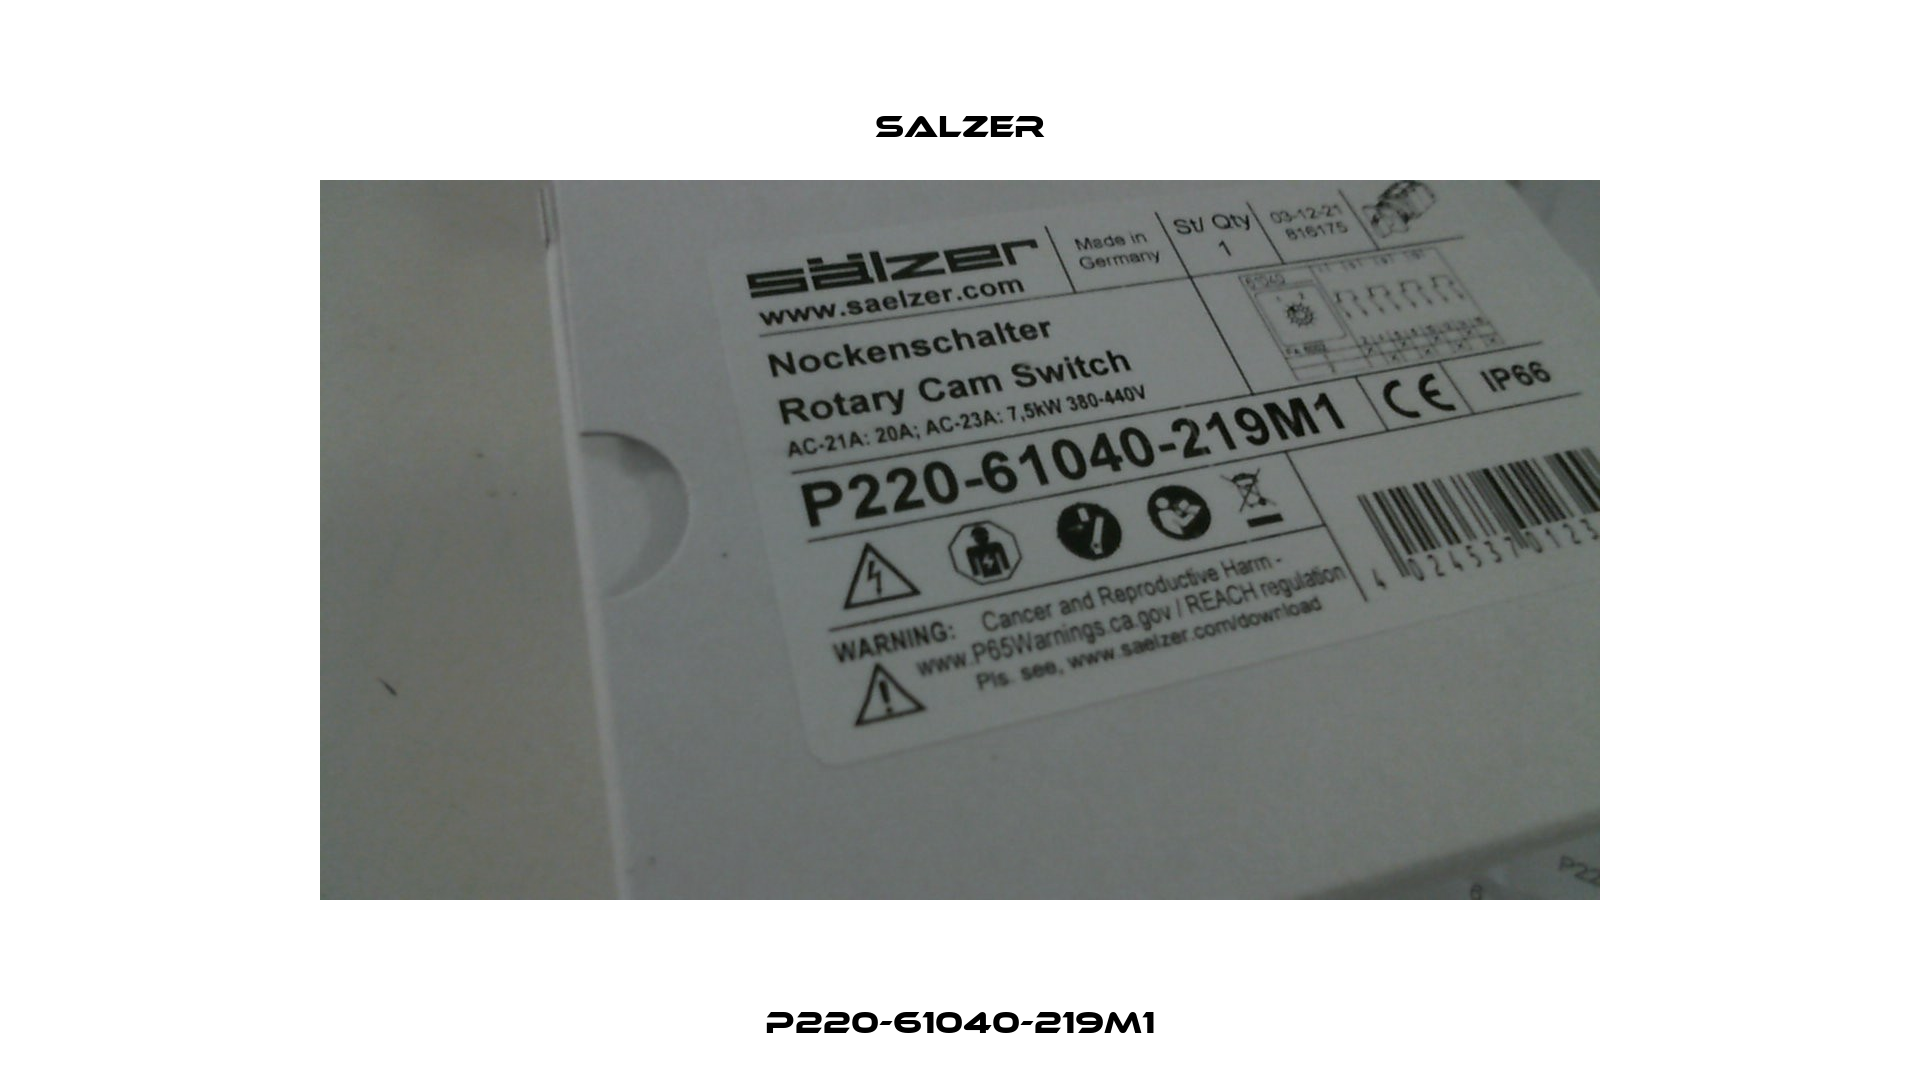 P220-61040-219M1 Salzer